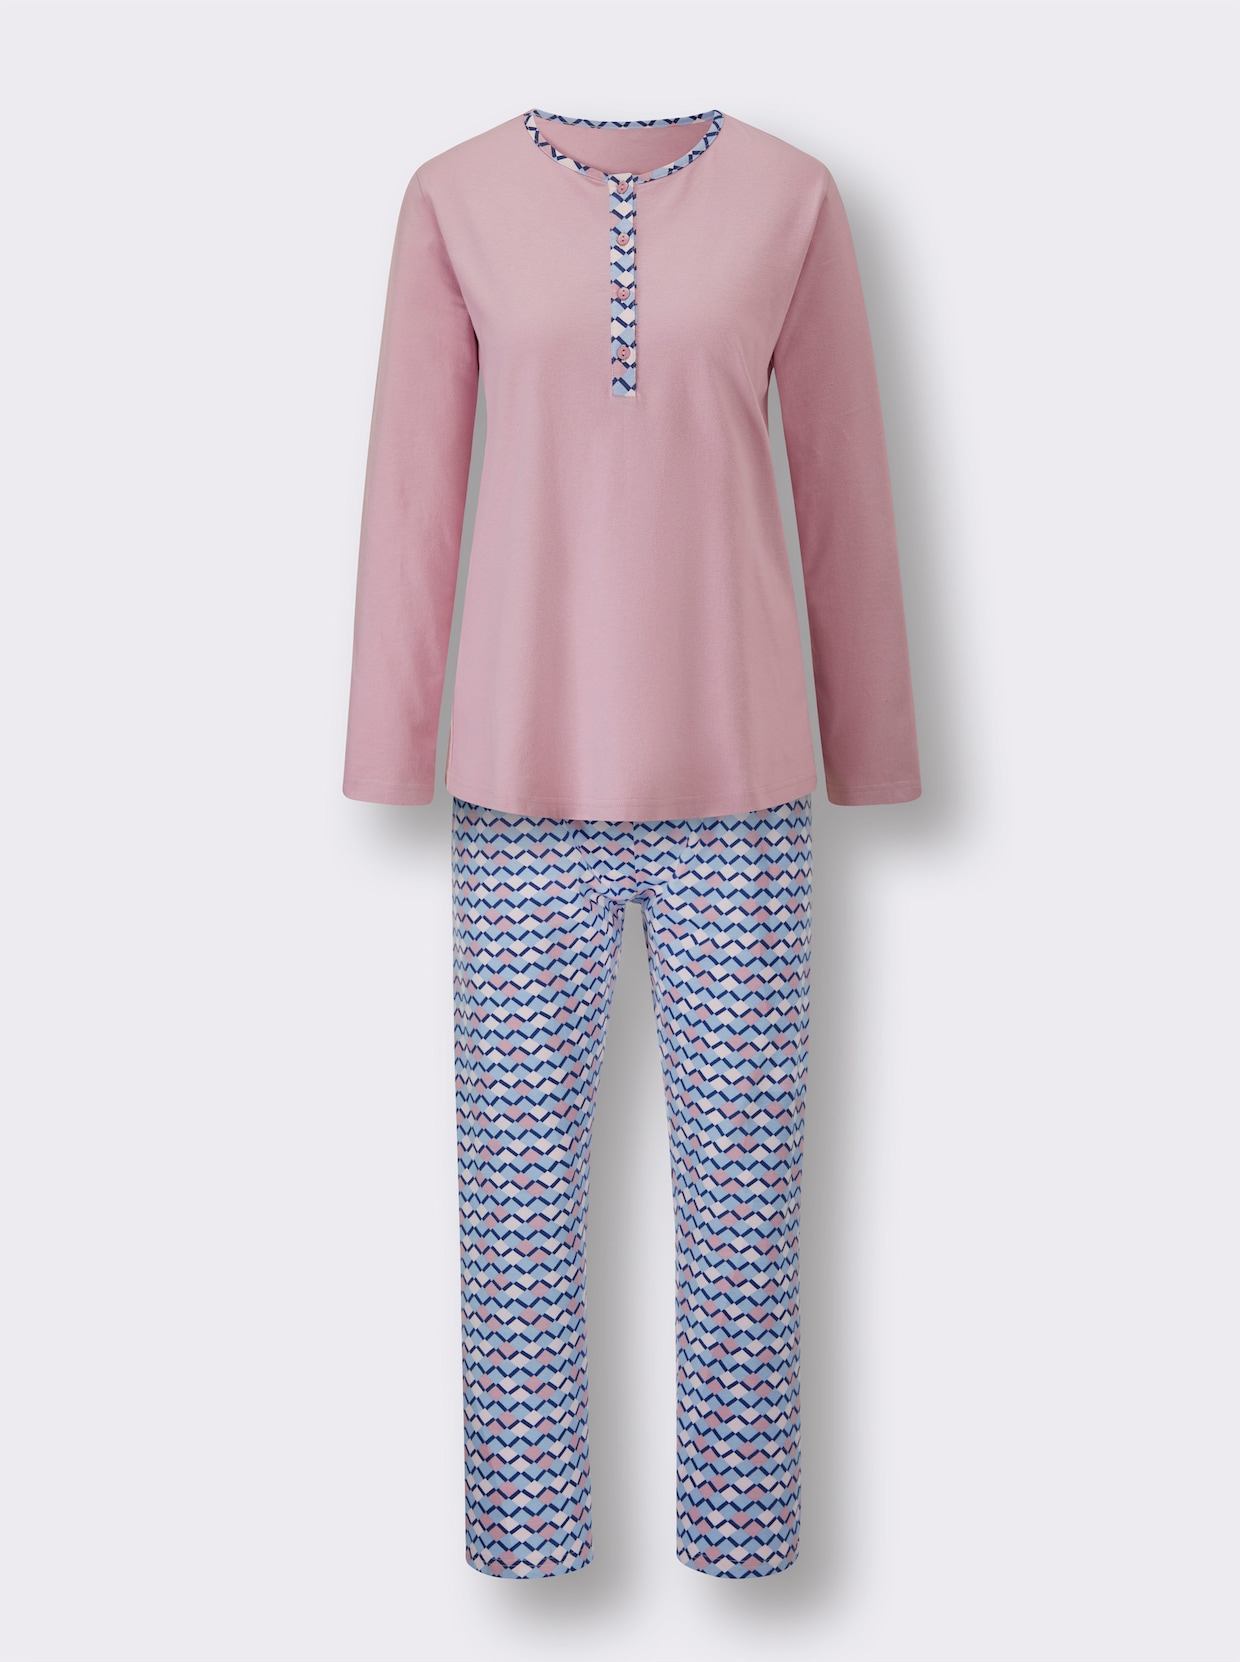 Comtessa Schlafanzug - rosé-bleu-bedruckt